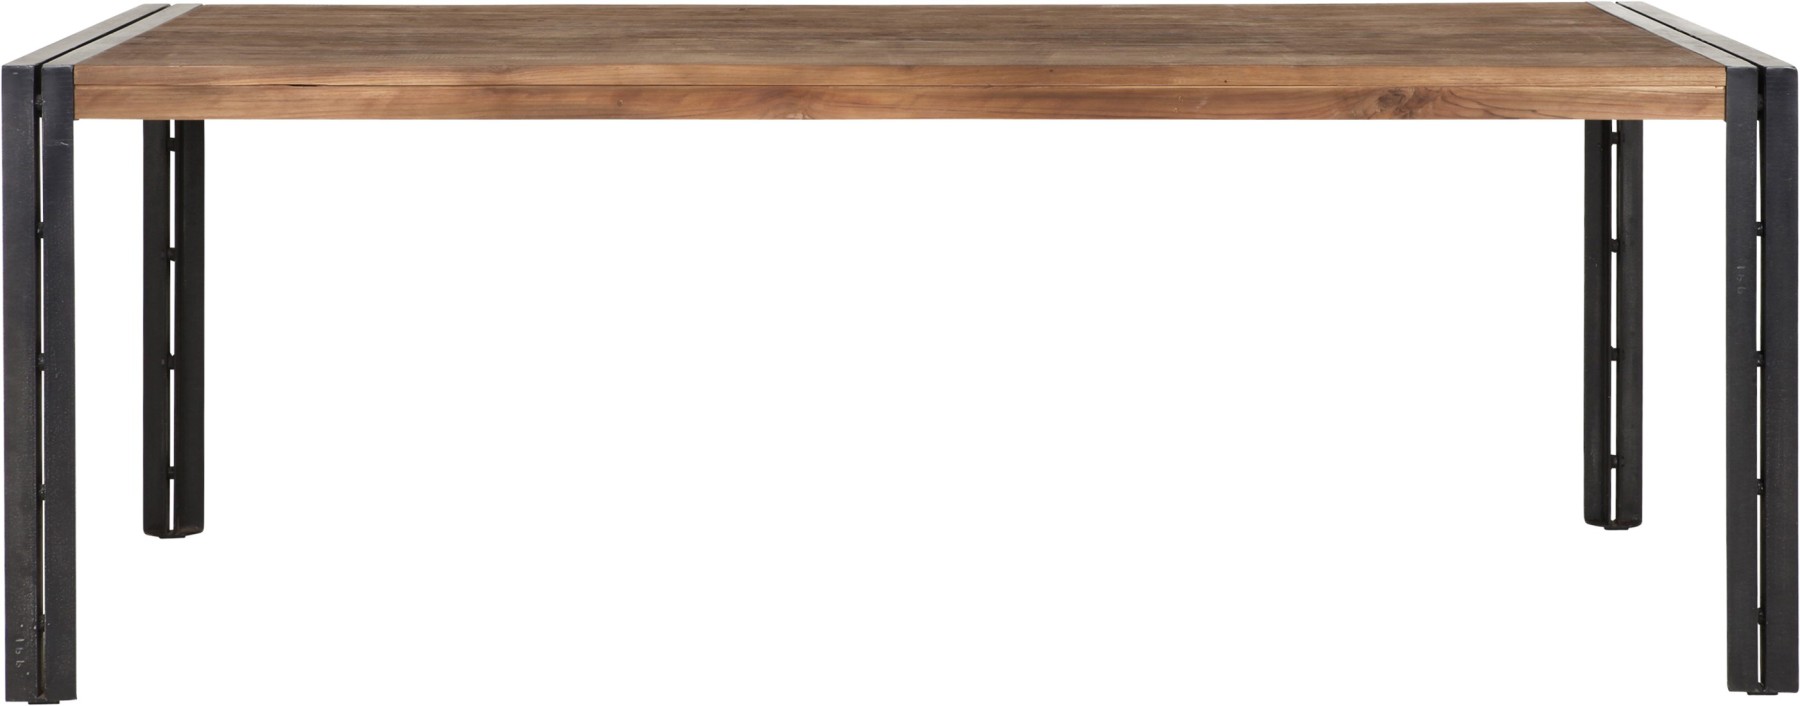 Tisch Industrie Holz Metall, Esstisch Industriedesign Metall, Länge 200 cm